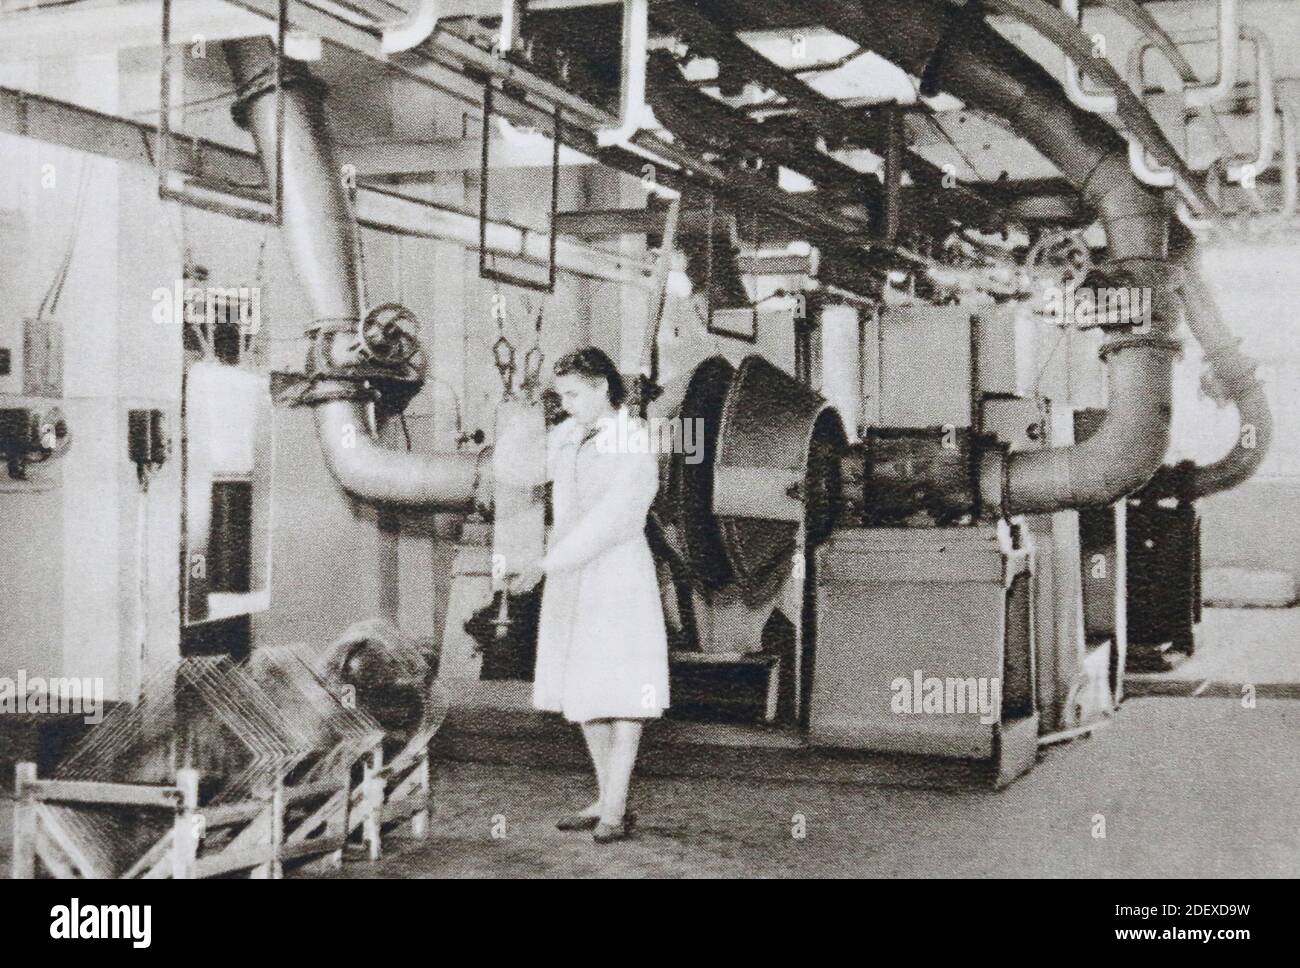 In der Werkstatt für die Herstellung von Automobilglas Stalinit der Gorki Glasfabrik in der UdSSR in den 1950er Jahren. Stockfoto